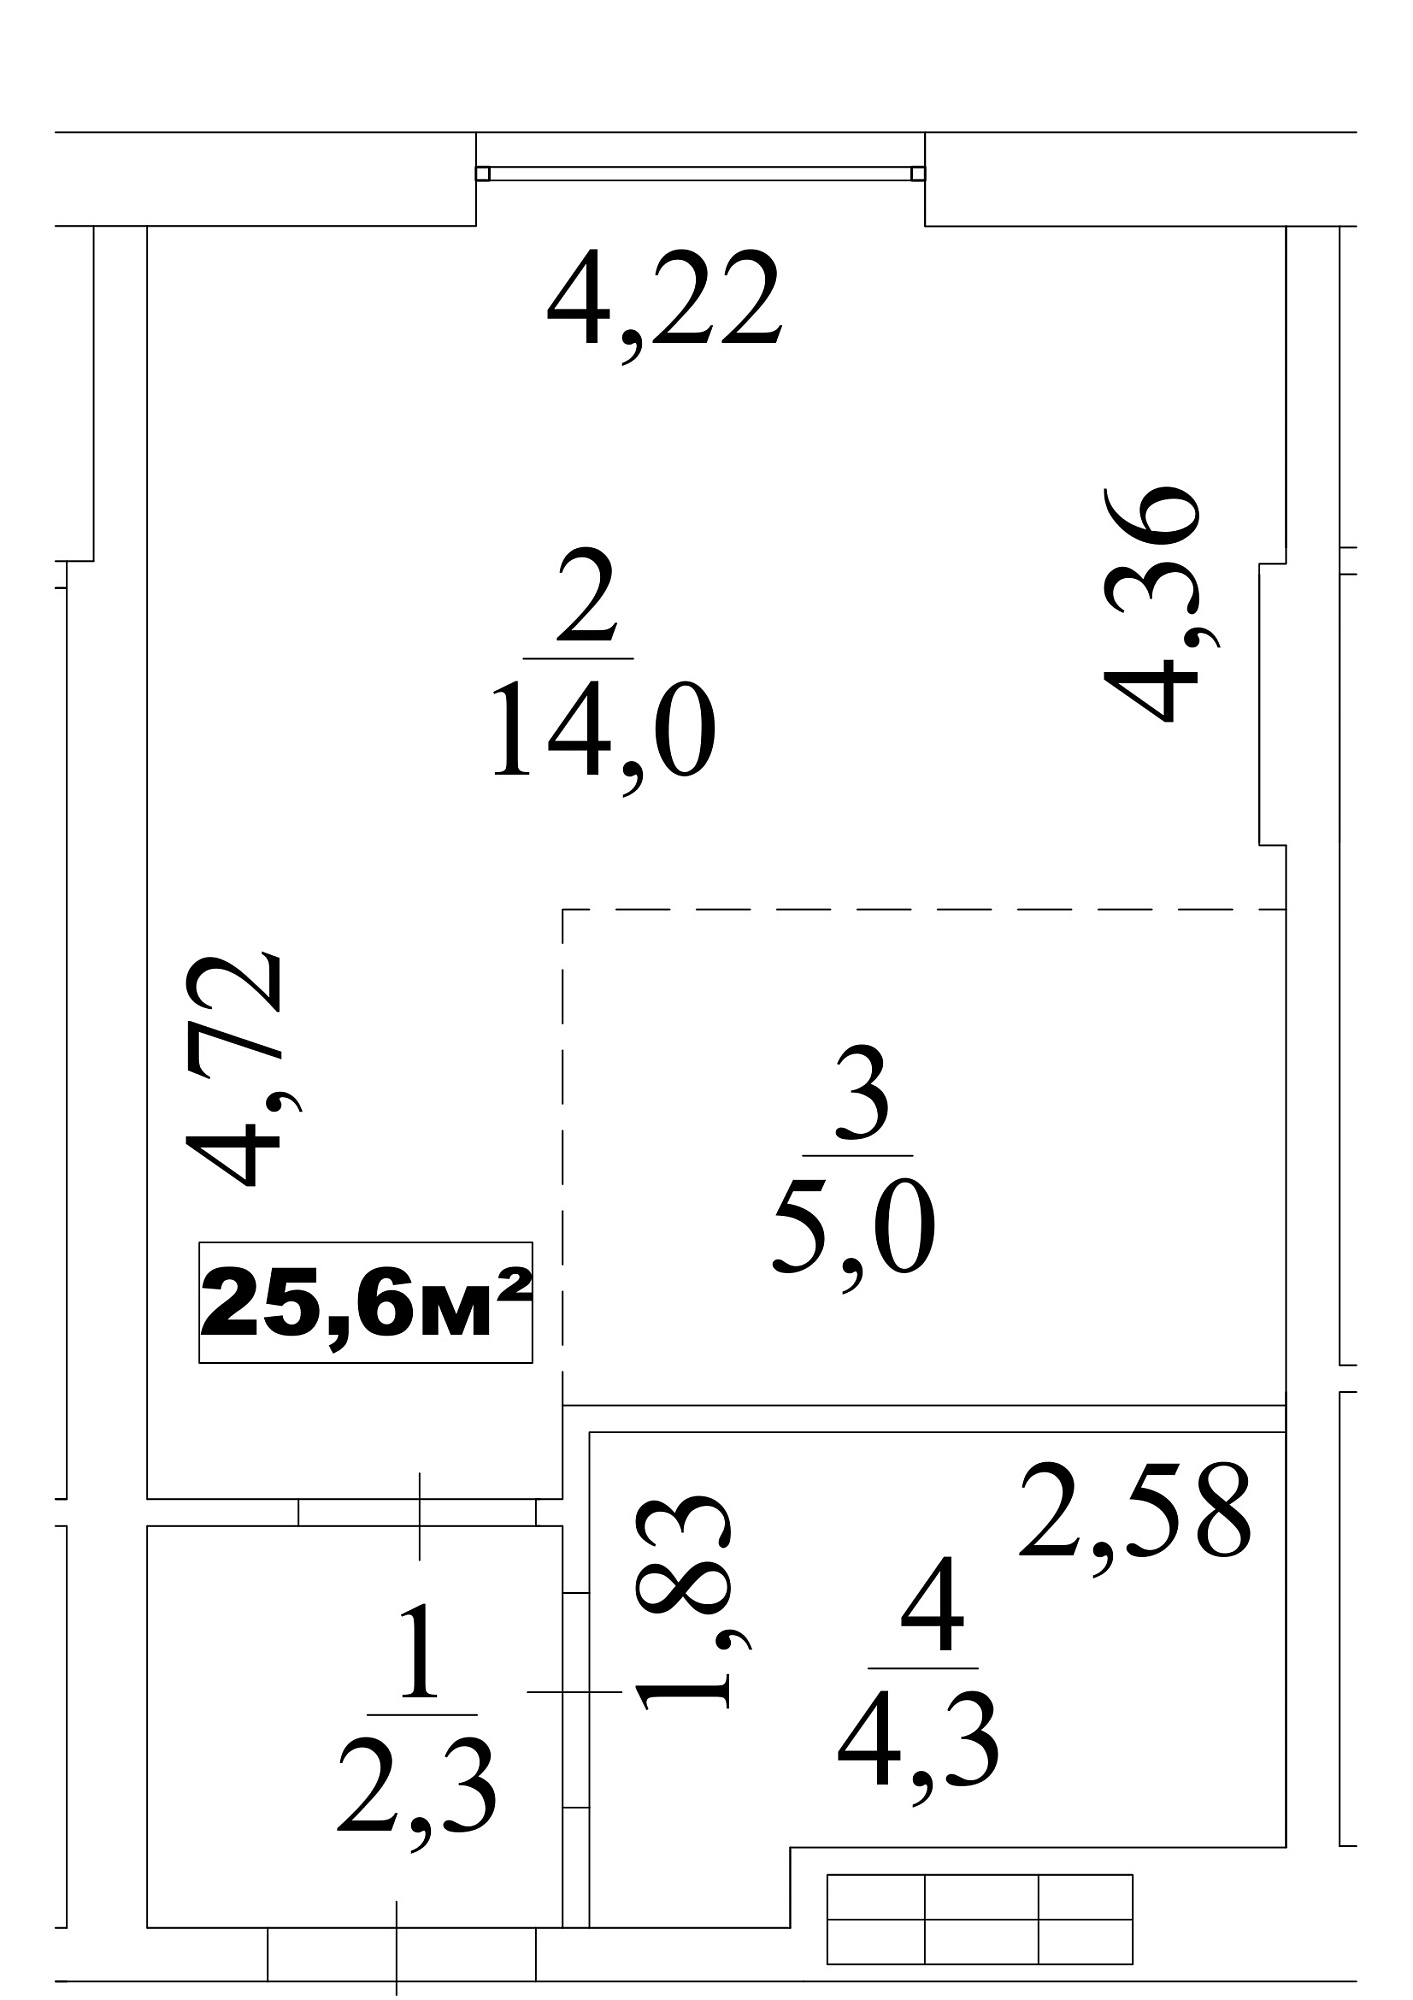 Планування Smart-квартира площею 25.6м2, AB-10-02/0012в.